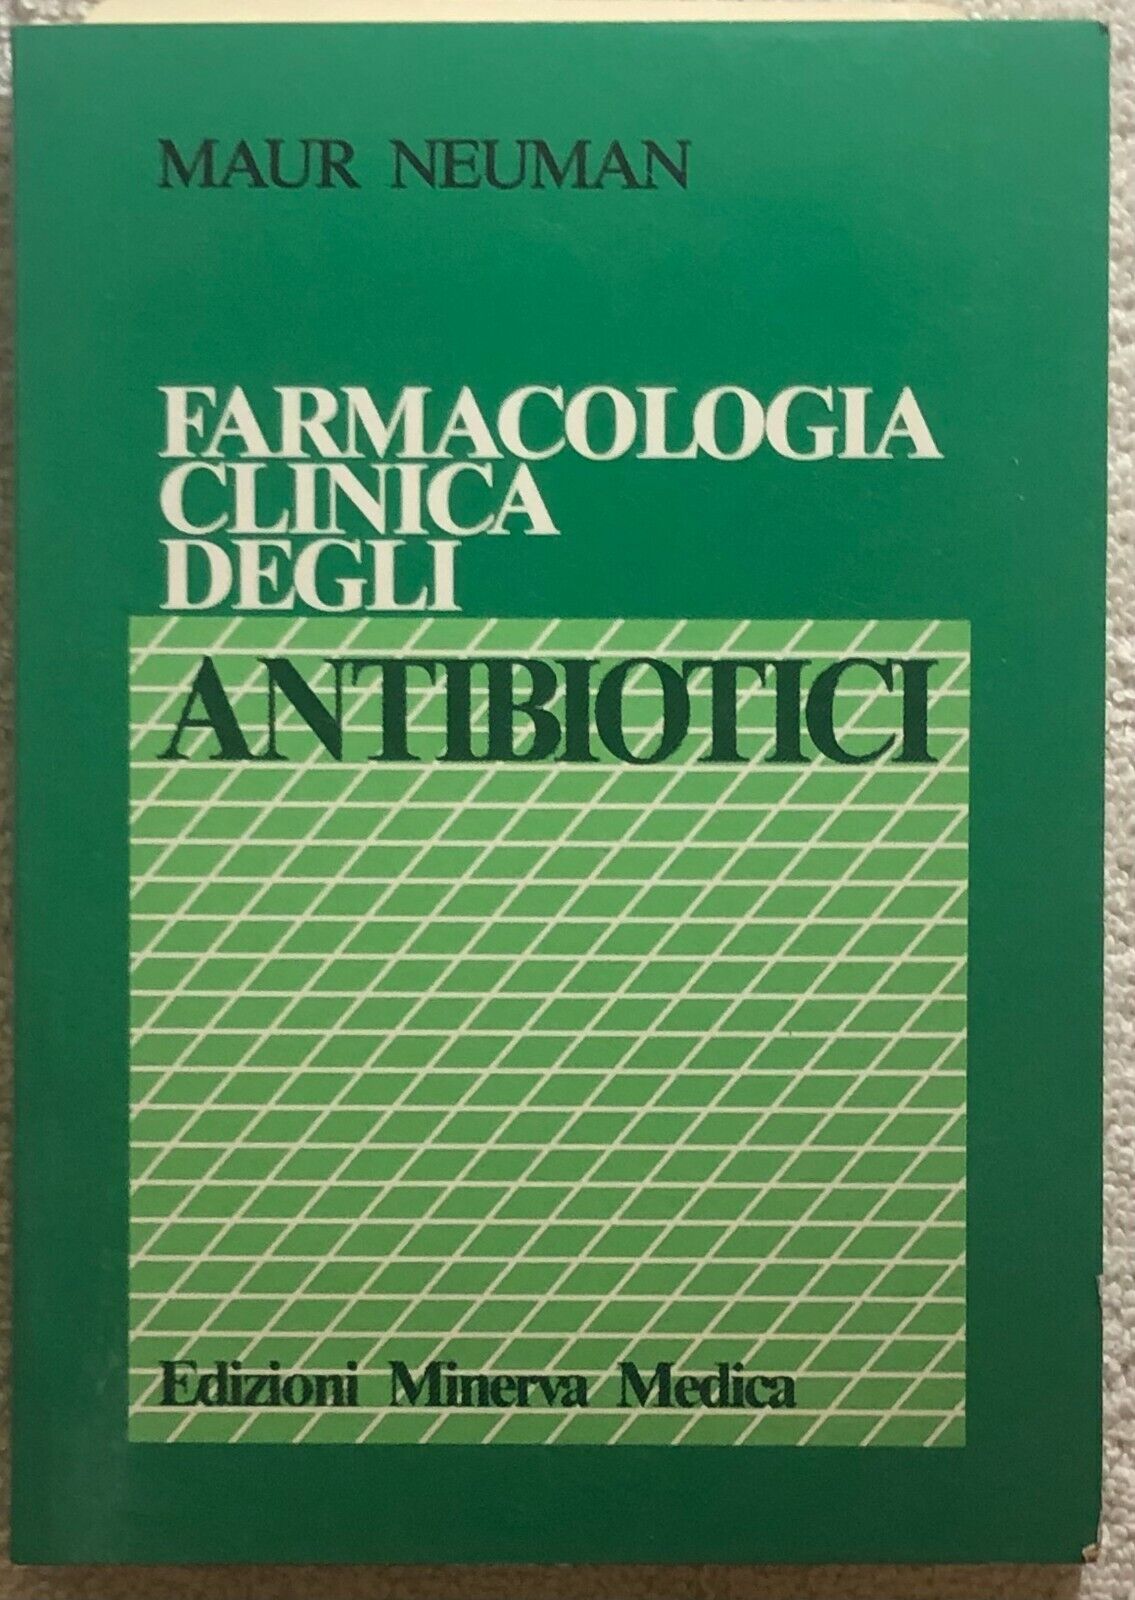 Farmacologia clinica degli antibiotici di Maur Neuman, Gaetano Zannini, Gian Pie